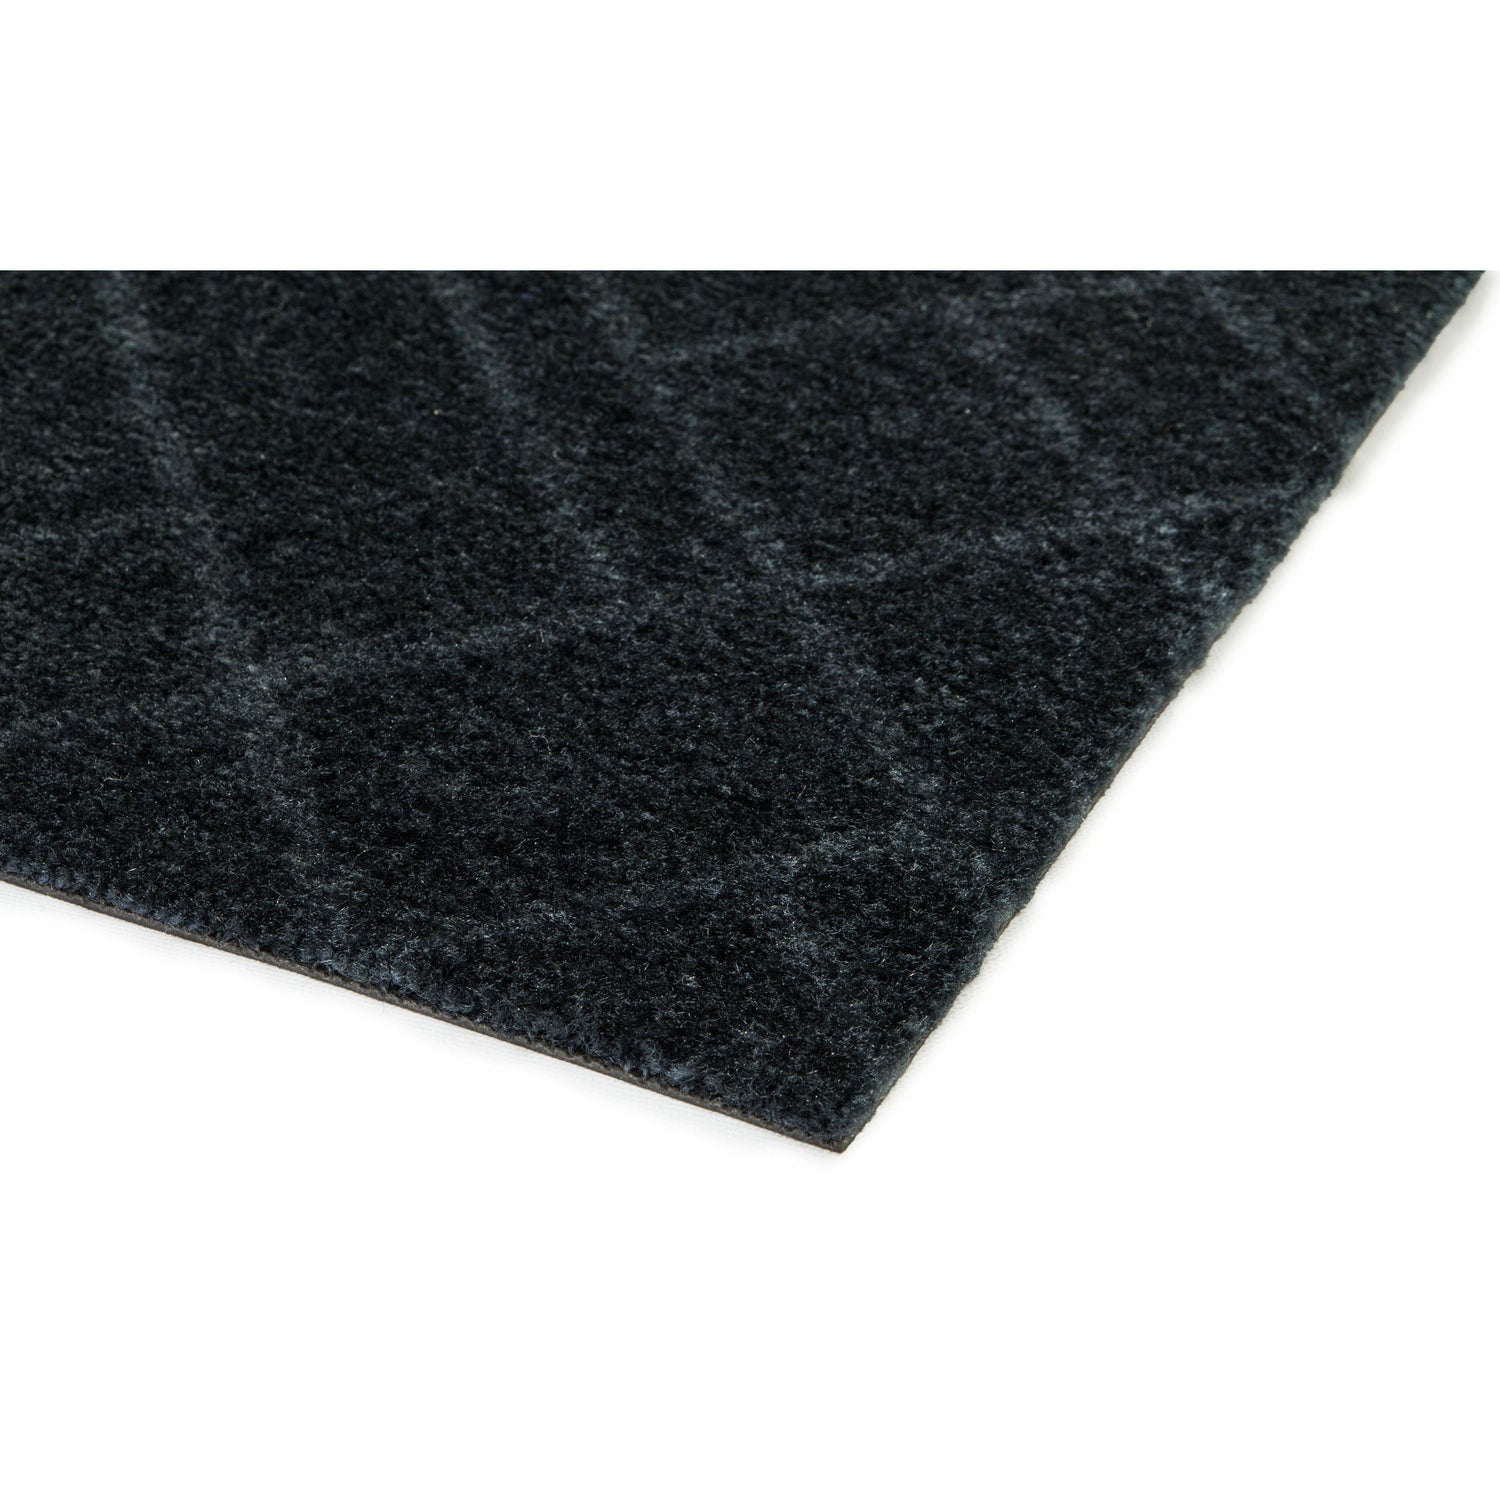 Floor mat 67 x 200 cm lines/dark gray